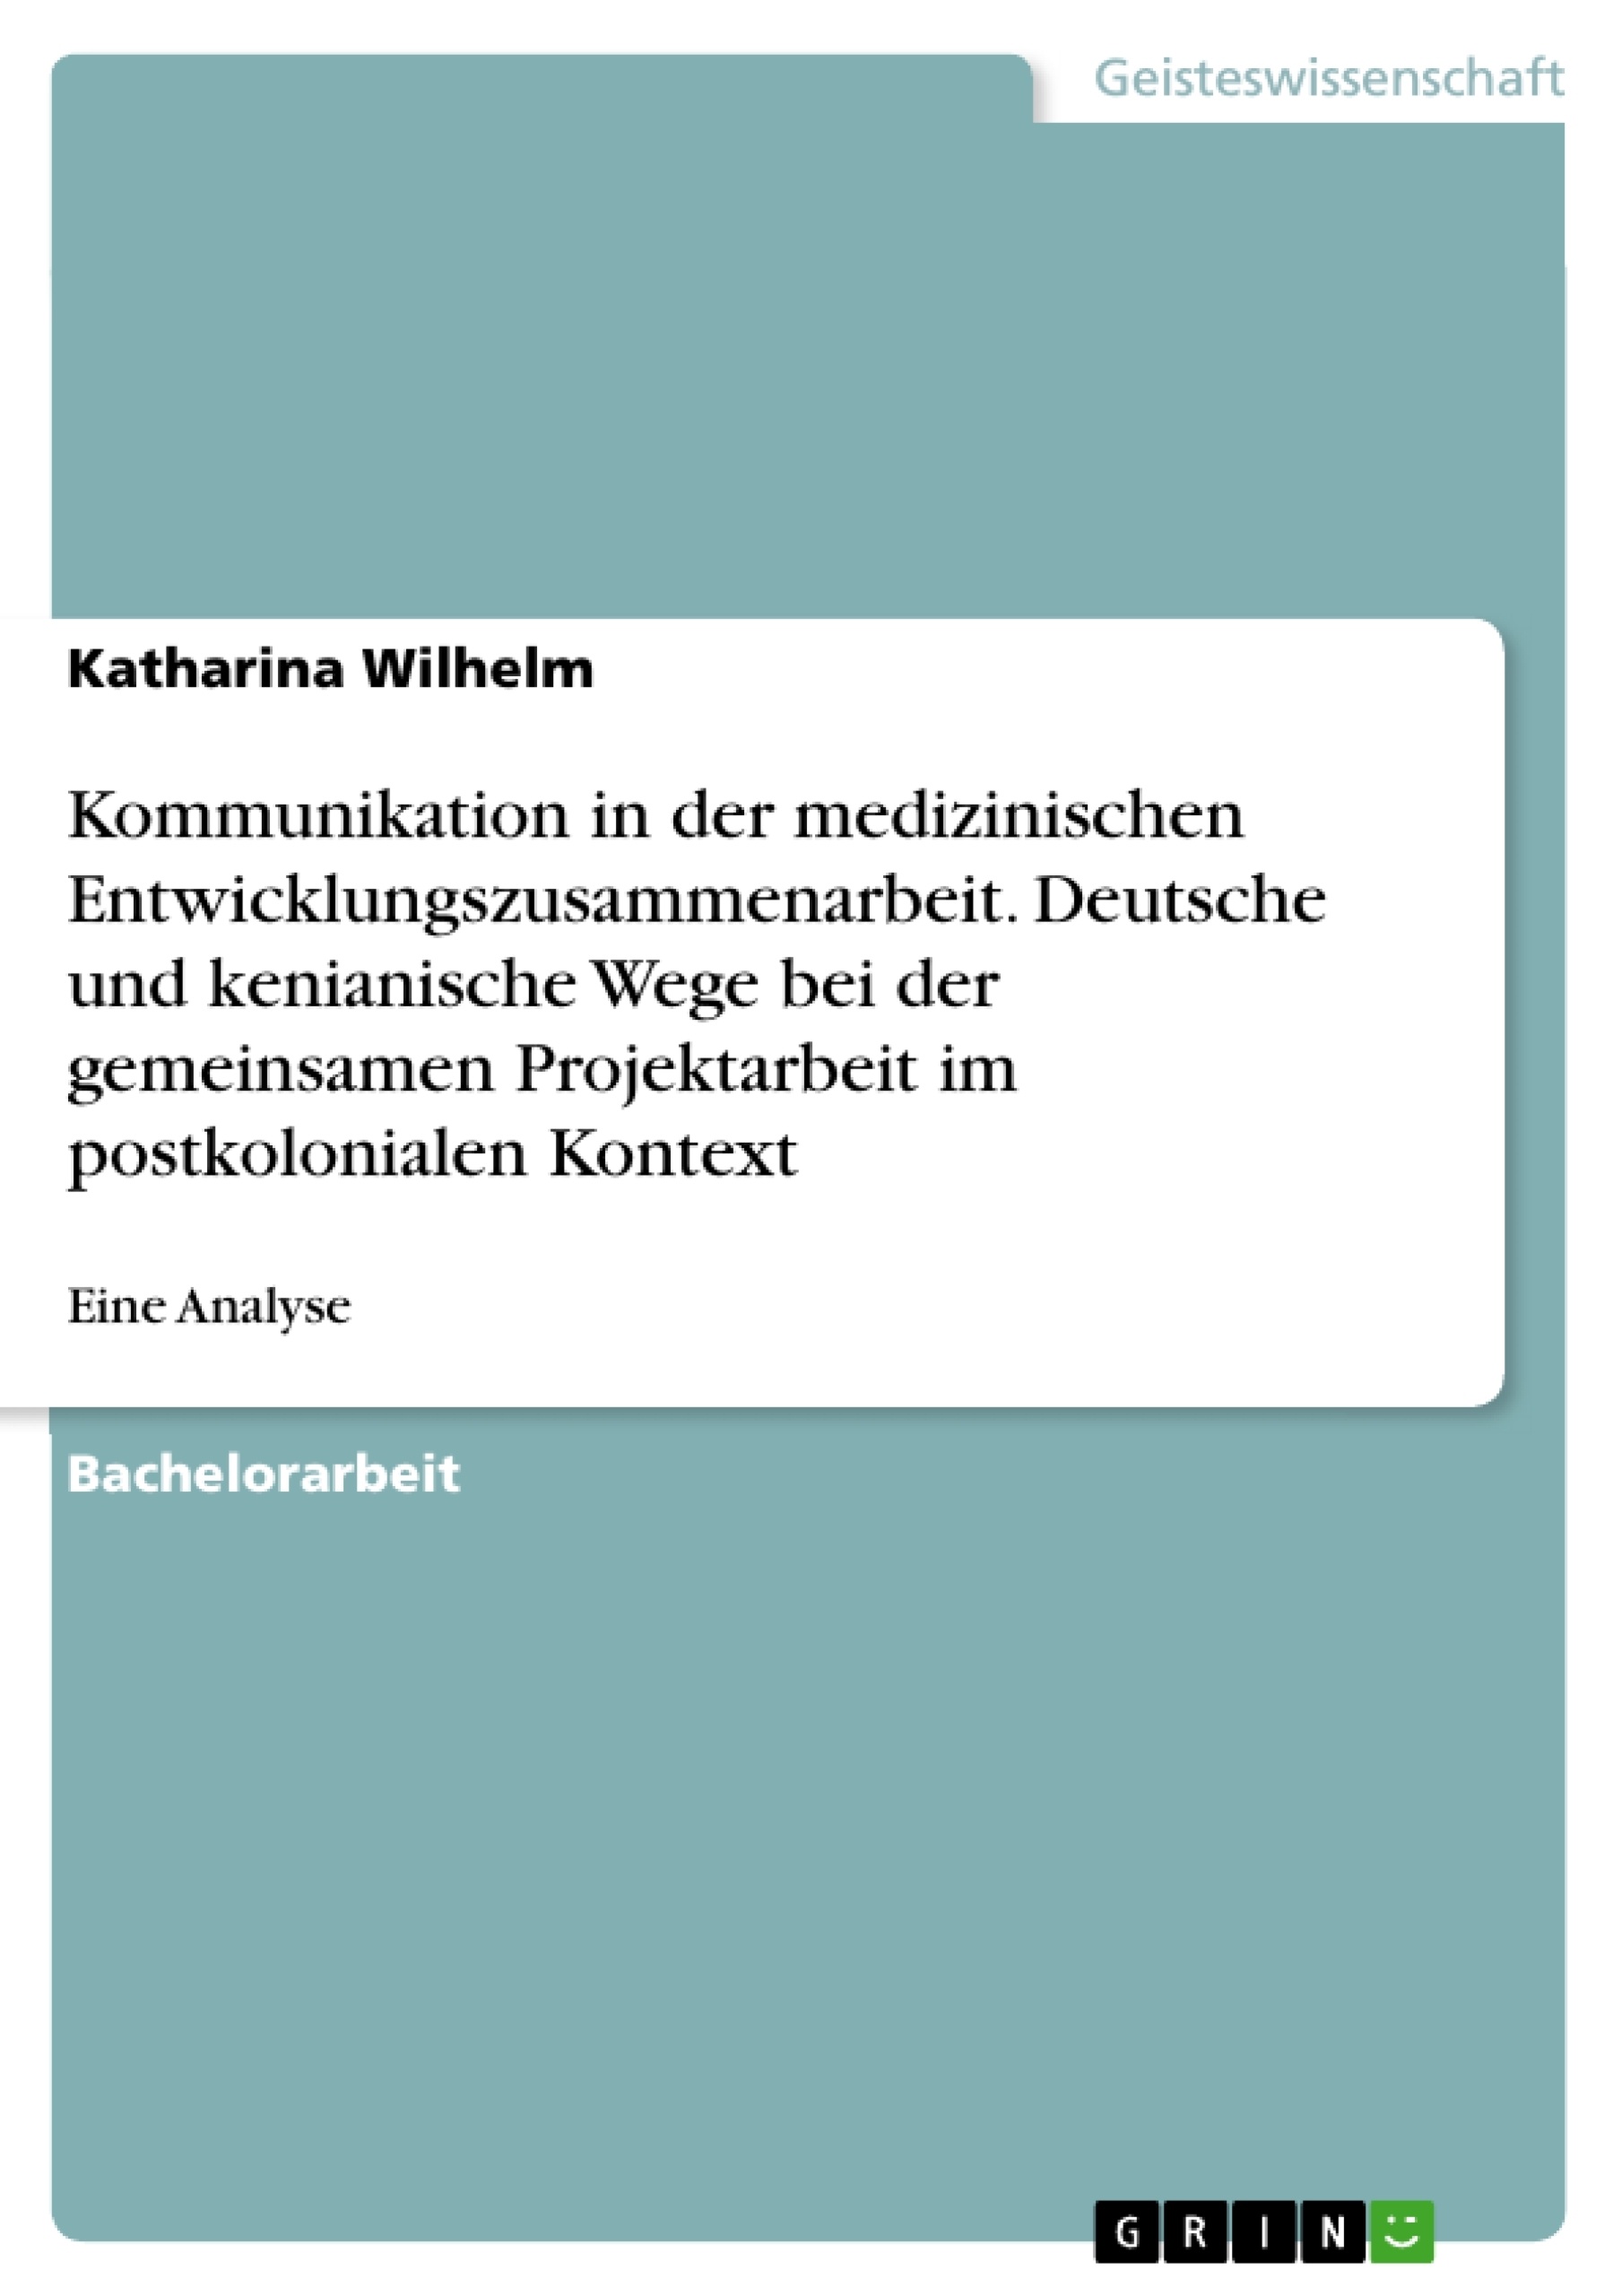 Titel: Kommunikation in der medizinischen Entwicklungszusammenarbeit. Deutsche und kenianische Wege bei der gemeinsamen Projektarbeit im postkolonialen Kontext